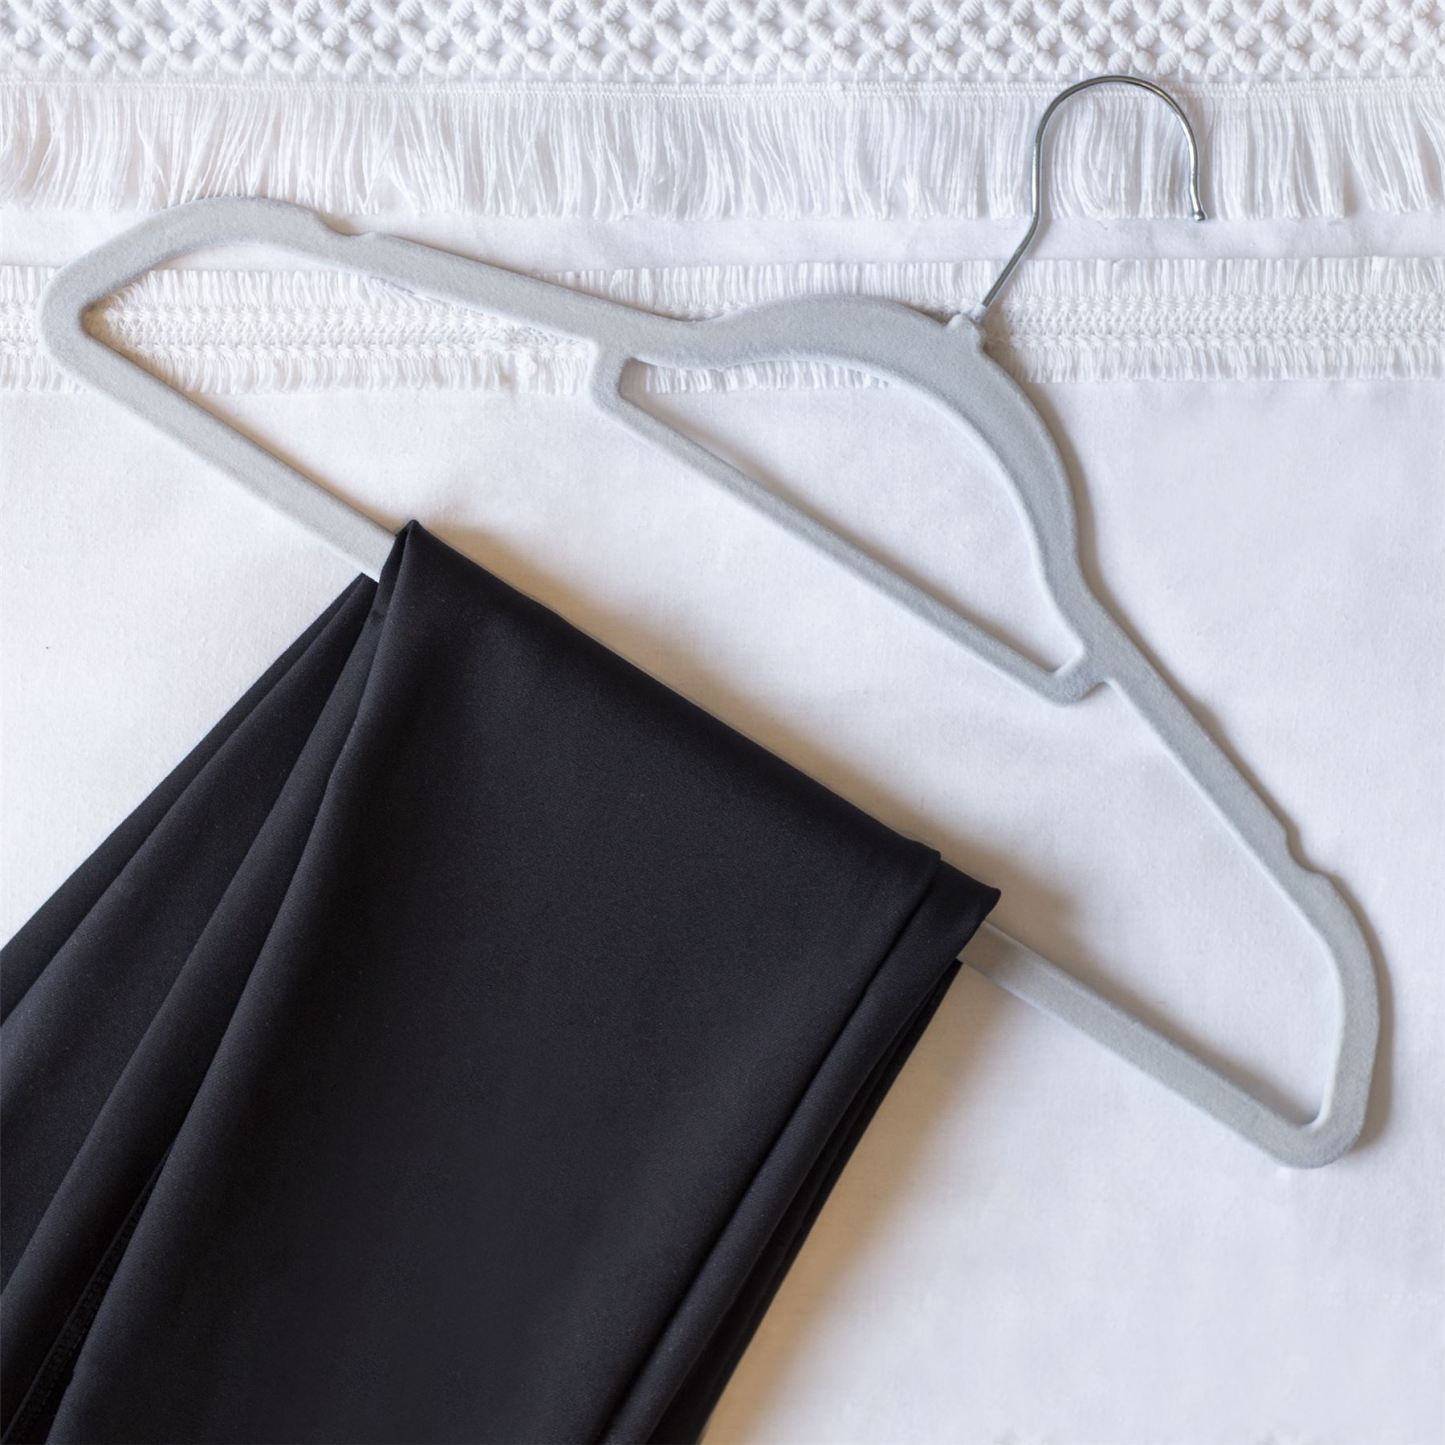 Velvet Coat Hangers Grey - Pack of 50 | M&W